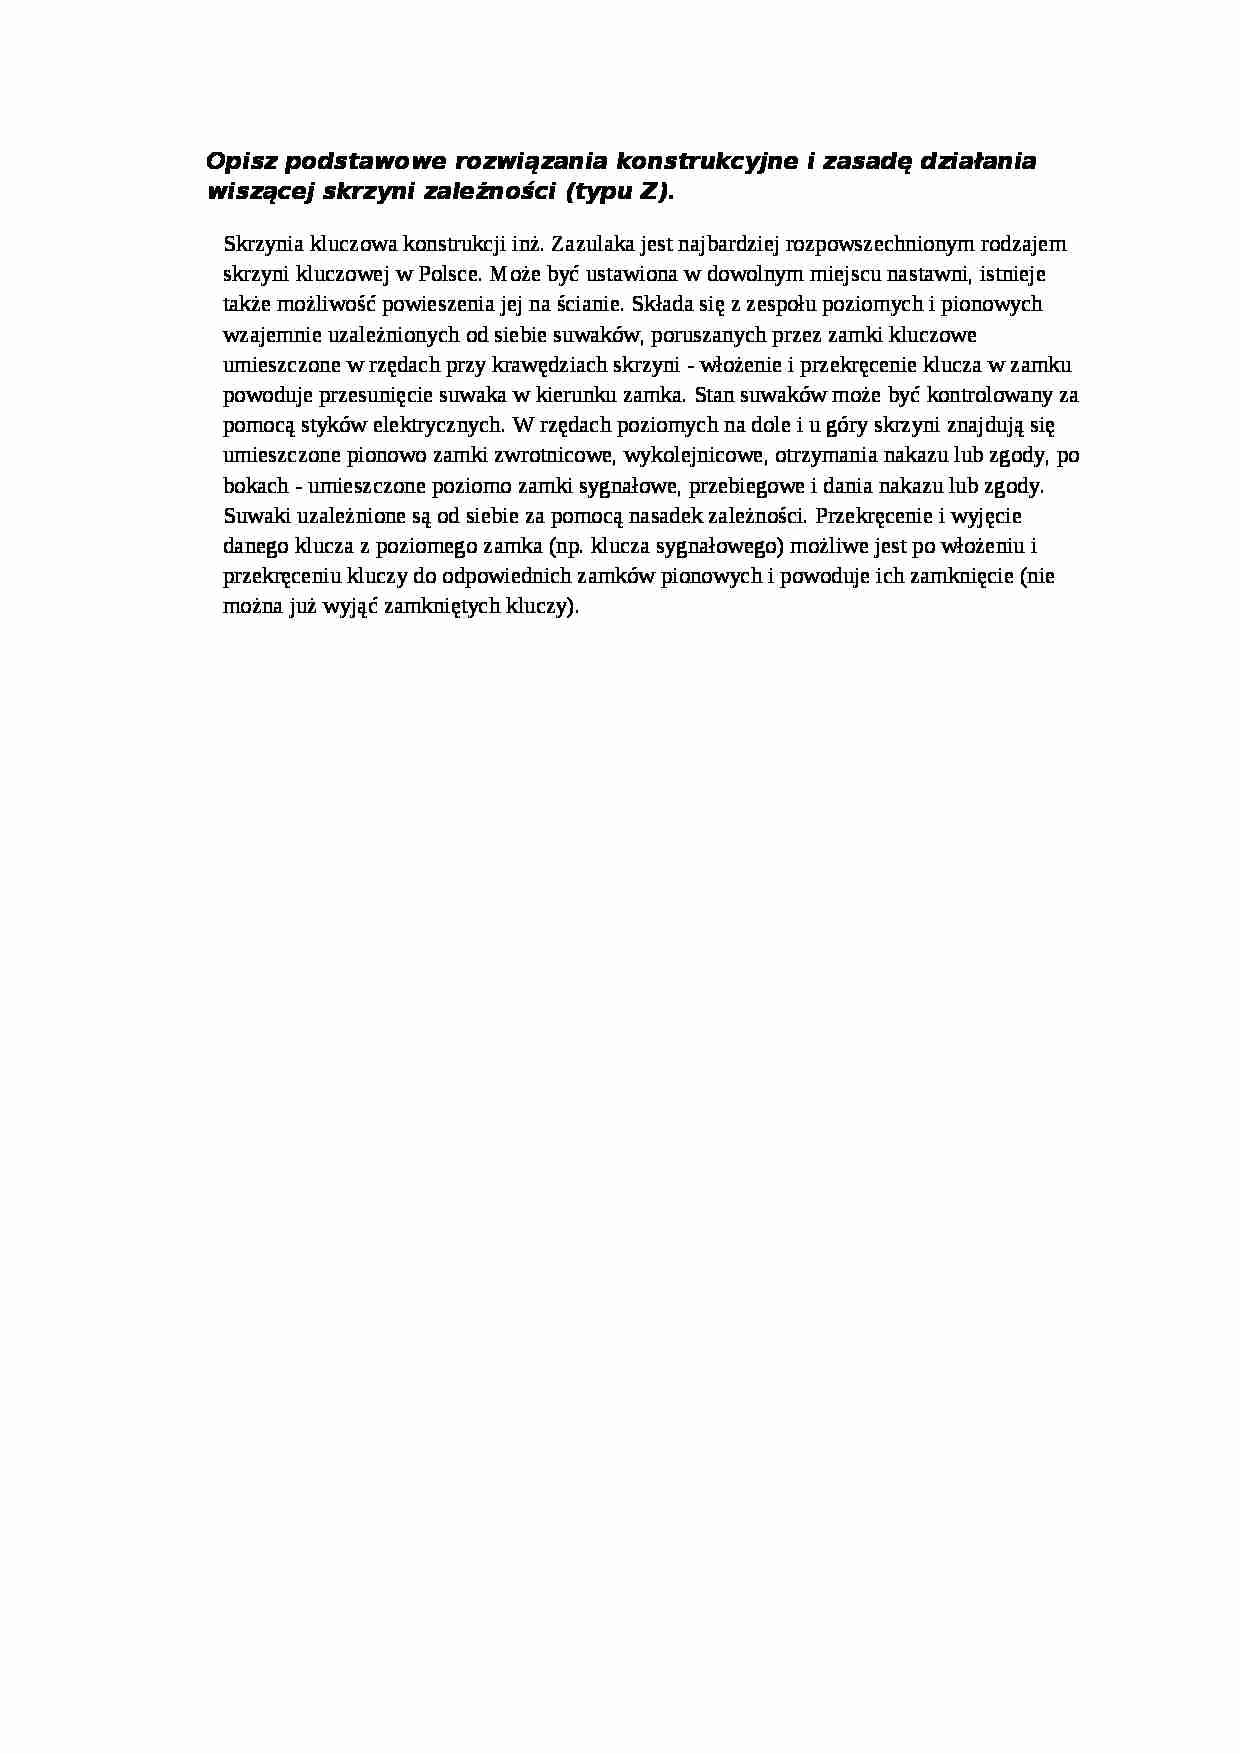 Wykład - podstawowe rozwiązania konstrukcyjne skrzyni zależności  - strona 1